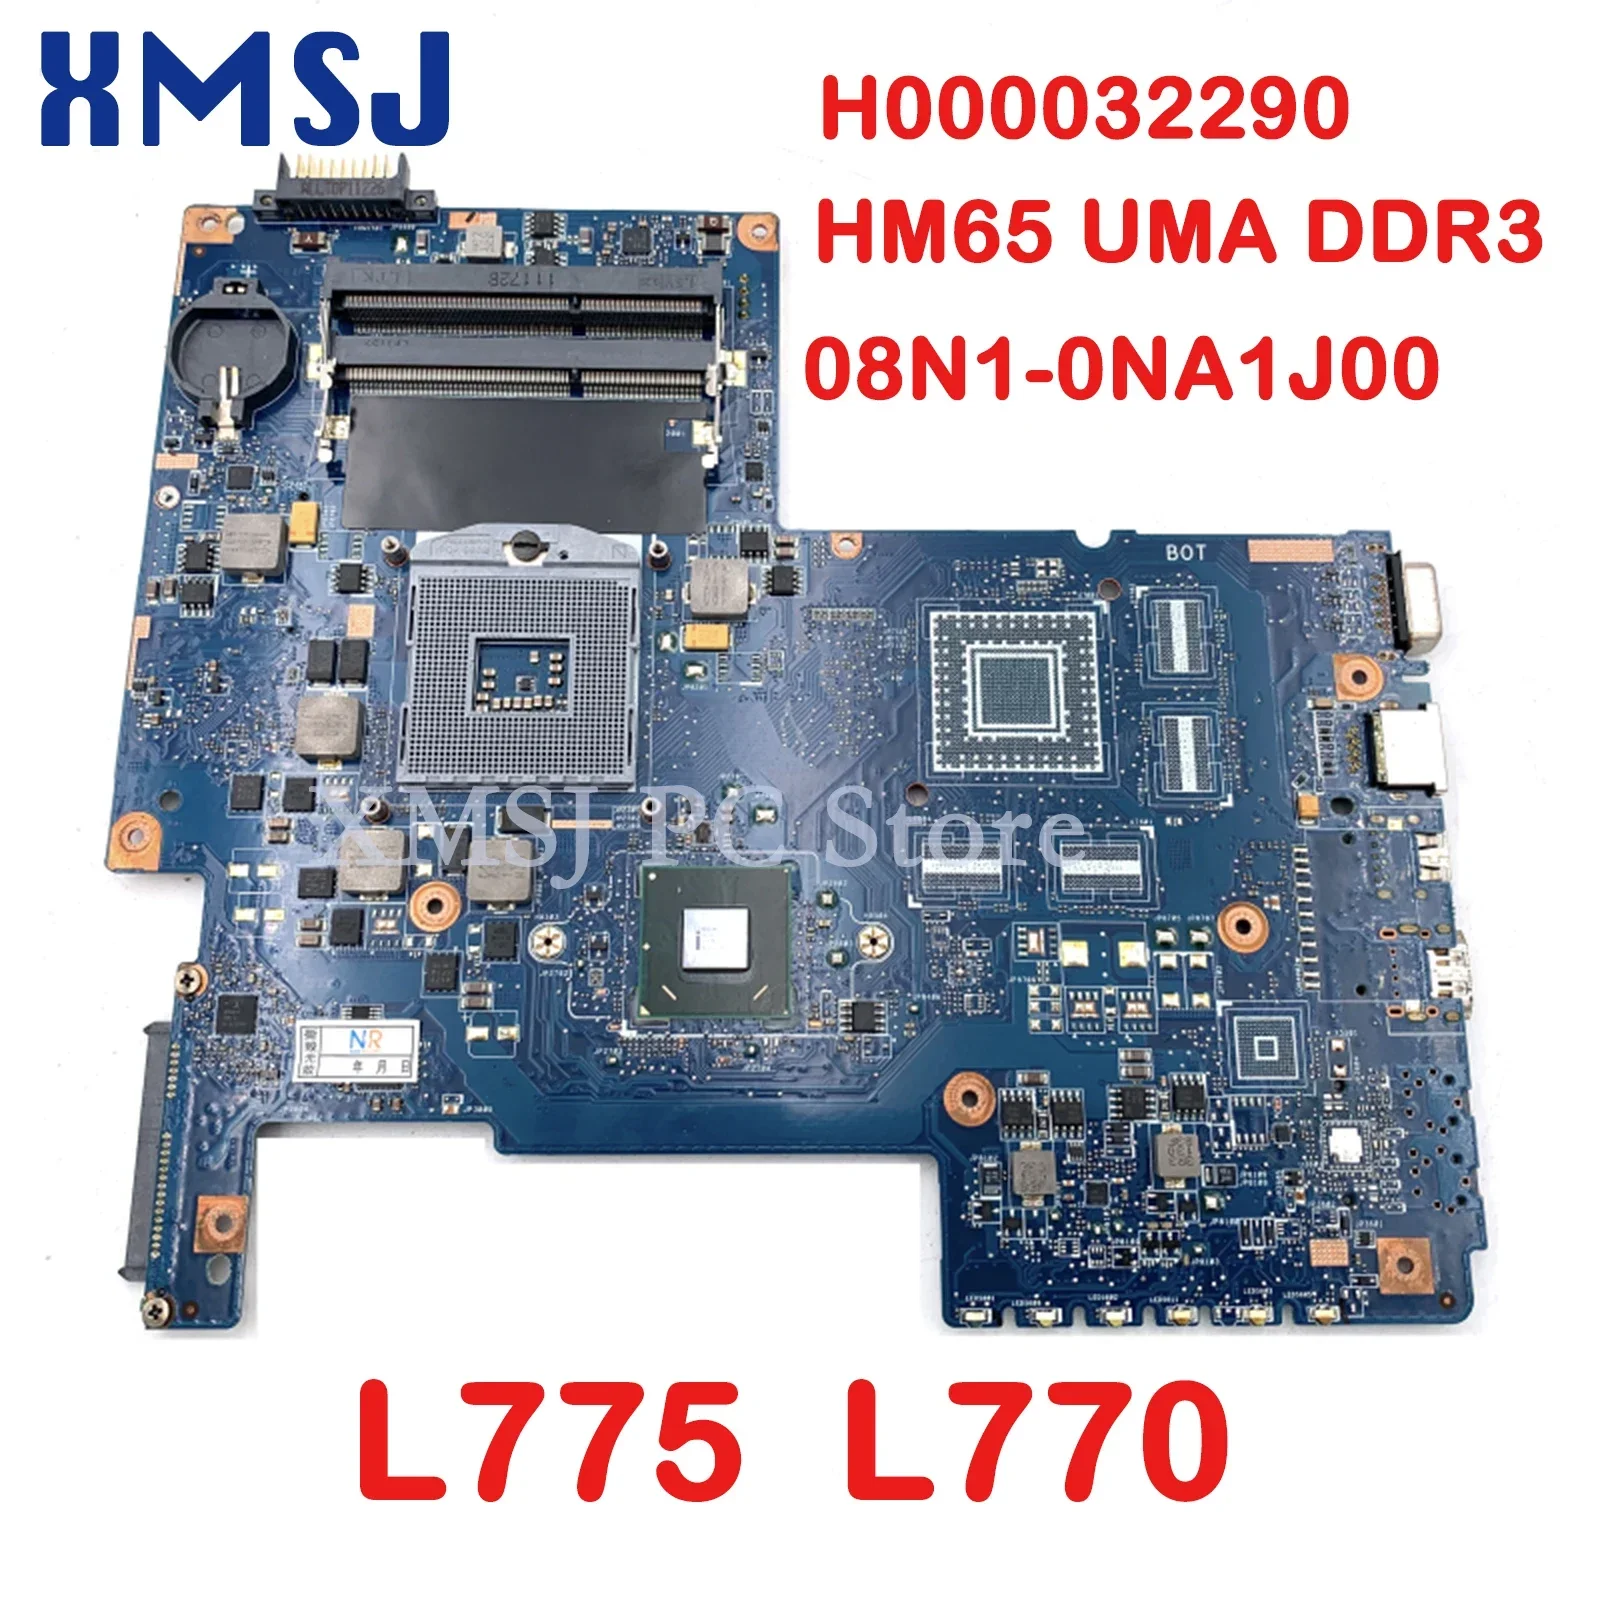 

Материнская плата XMSJ для ноутбука Toshiba Satellite L775 L770 H000032290 08N1-0NA1J00 HM65 UMA DDR3, полный тест